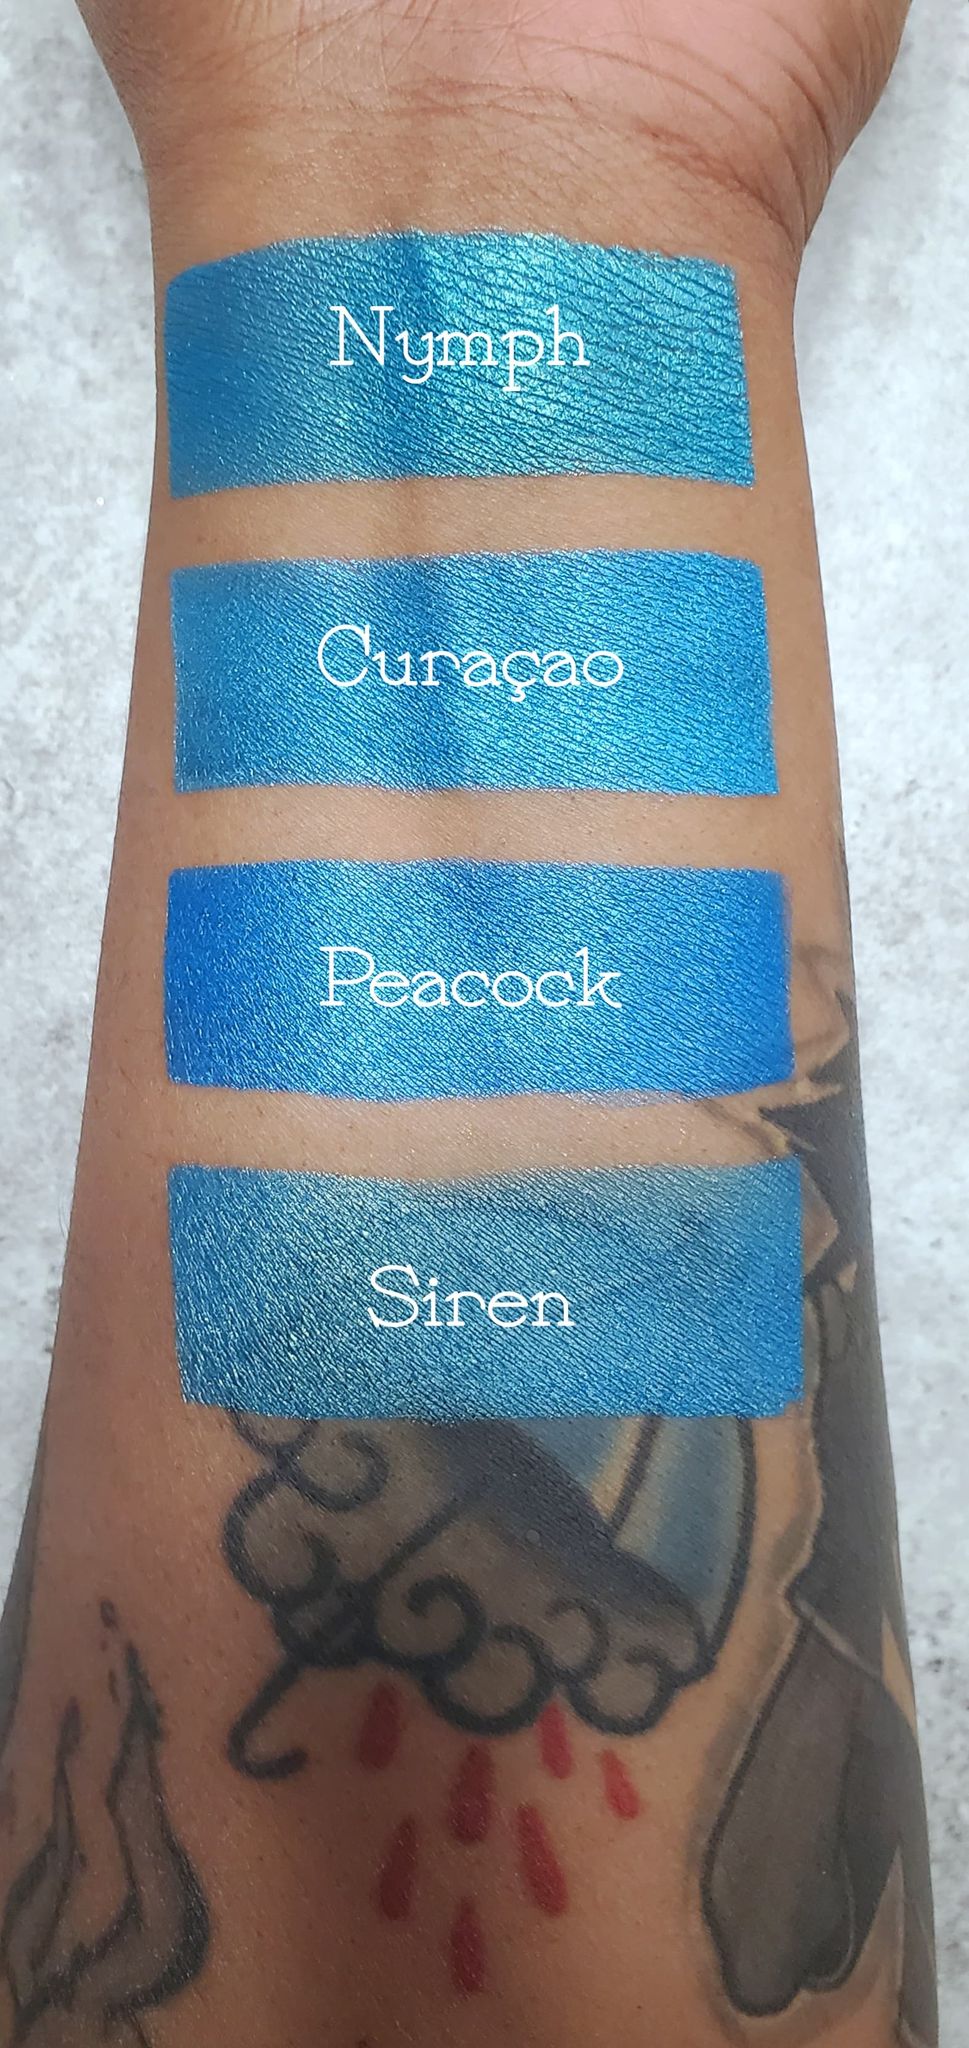 Curaçao - Eyeshadow Teal Blue